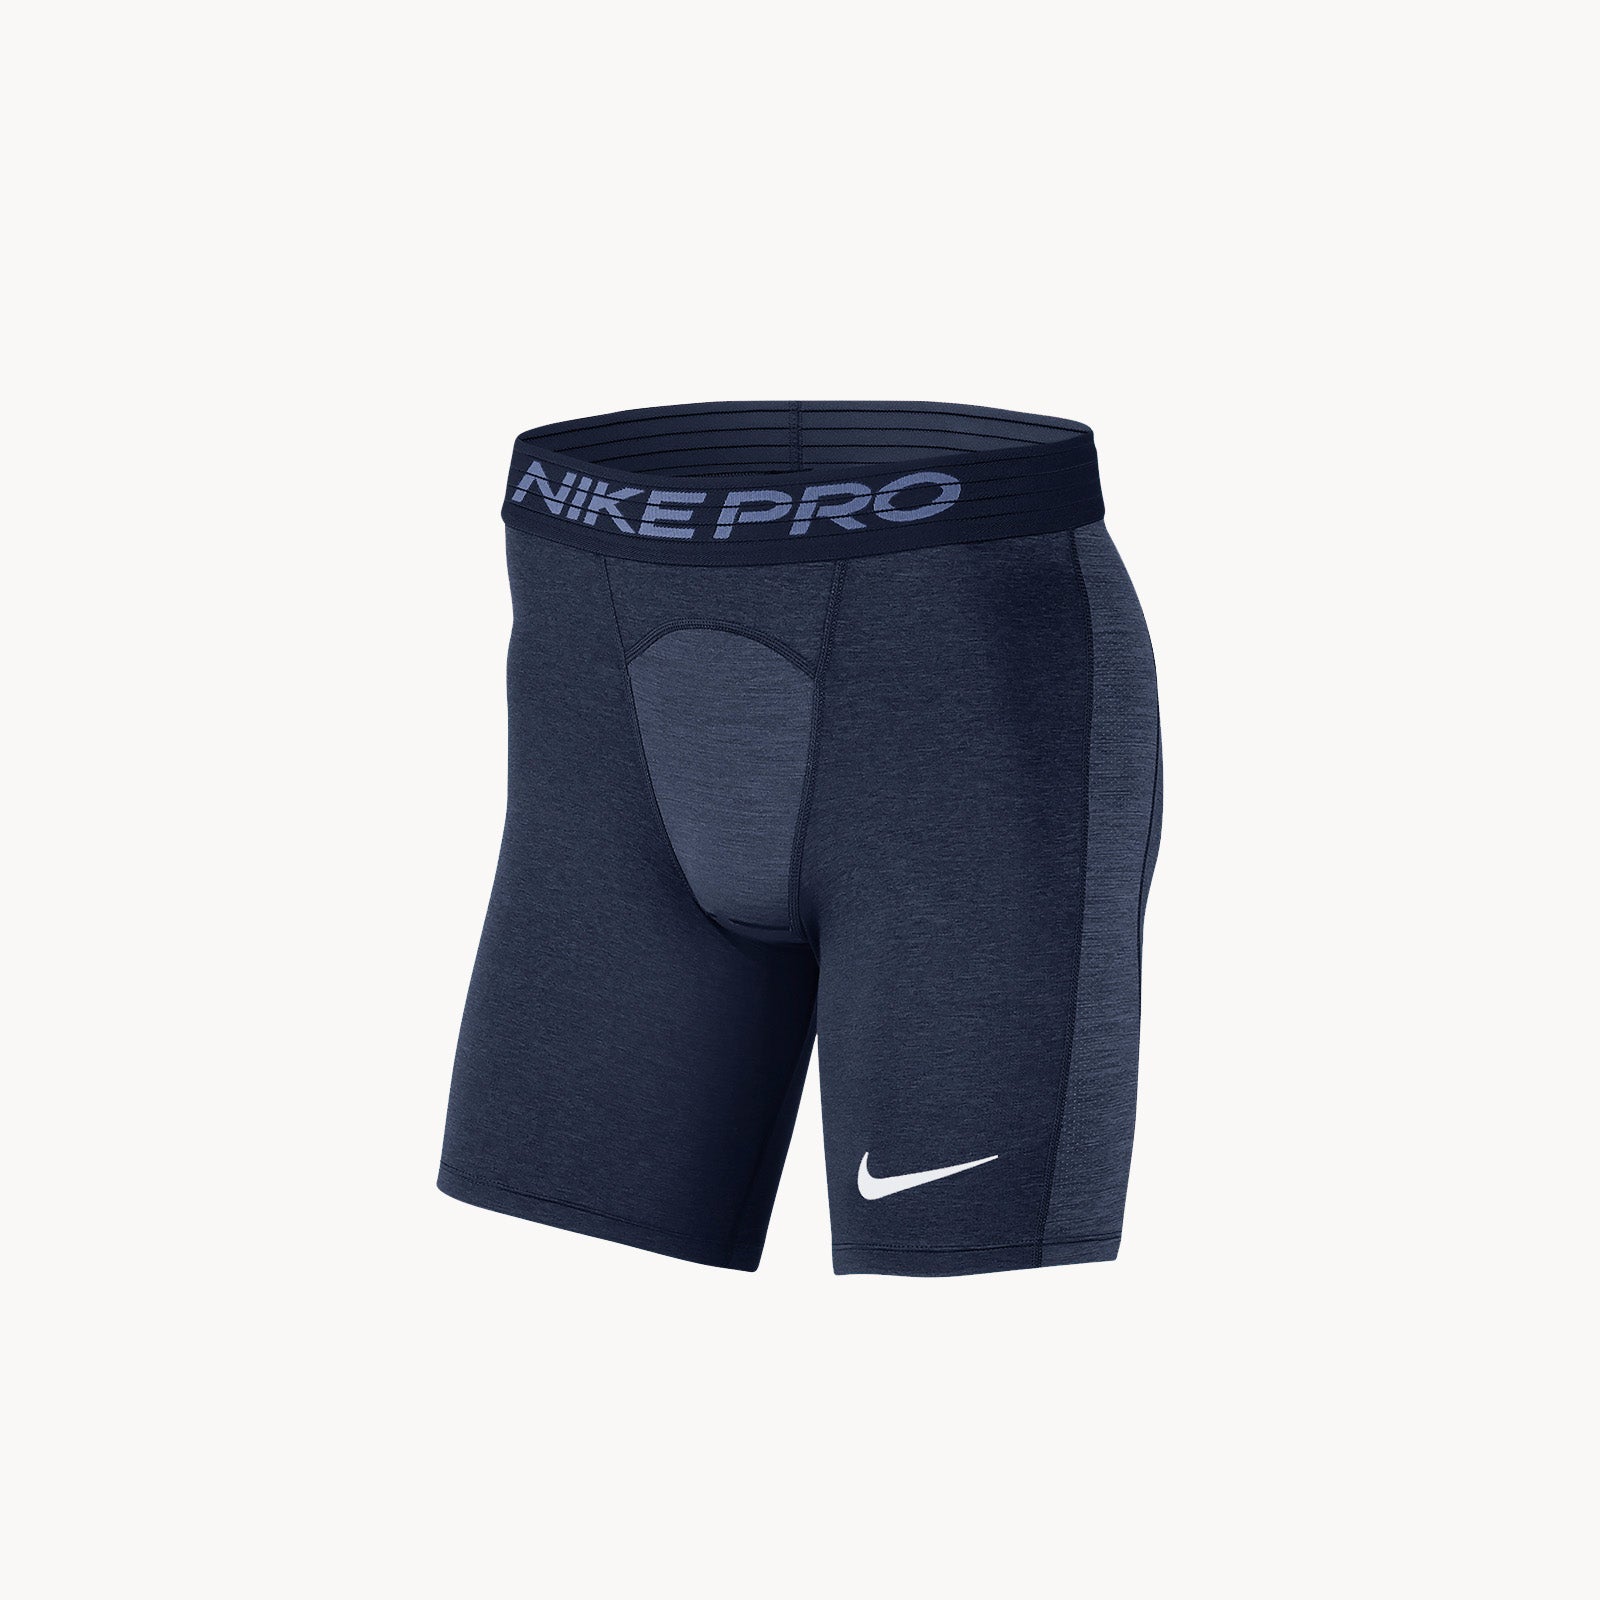 navy blue nike pro shorts